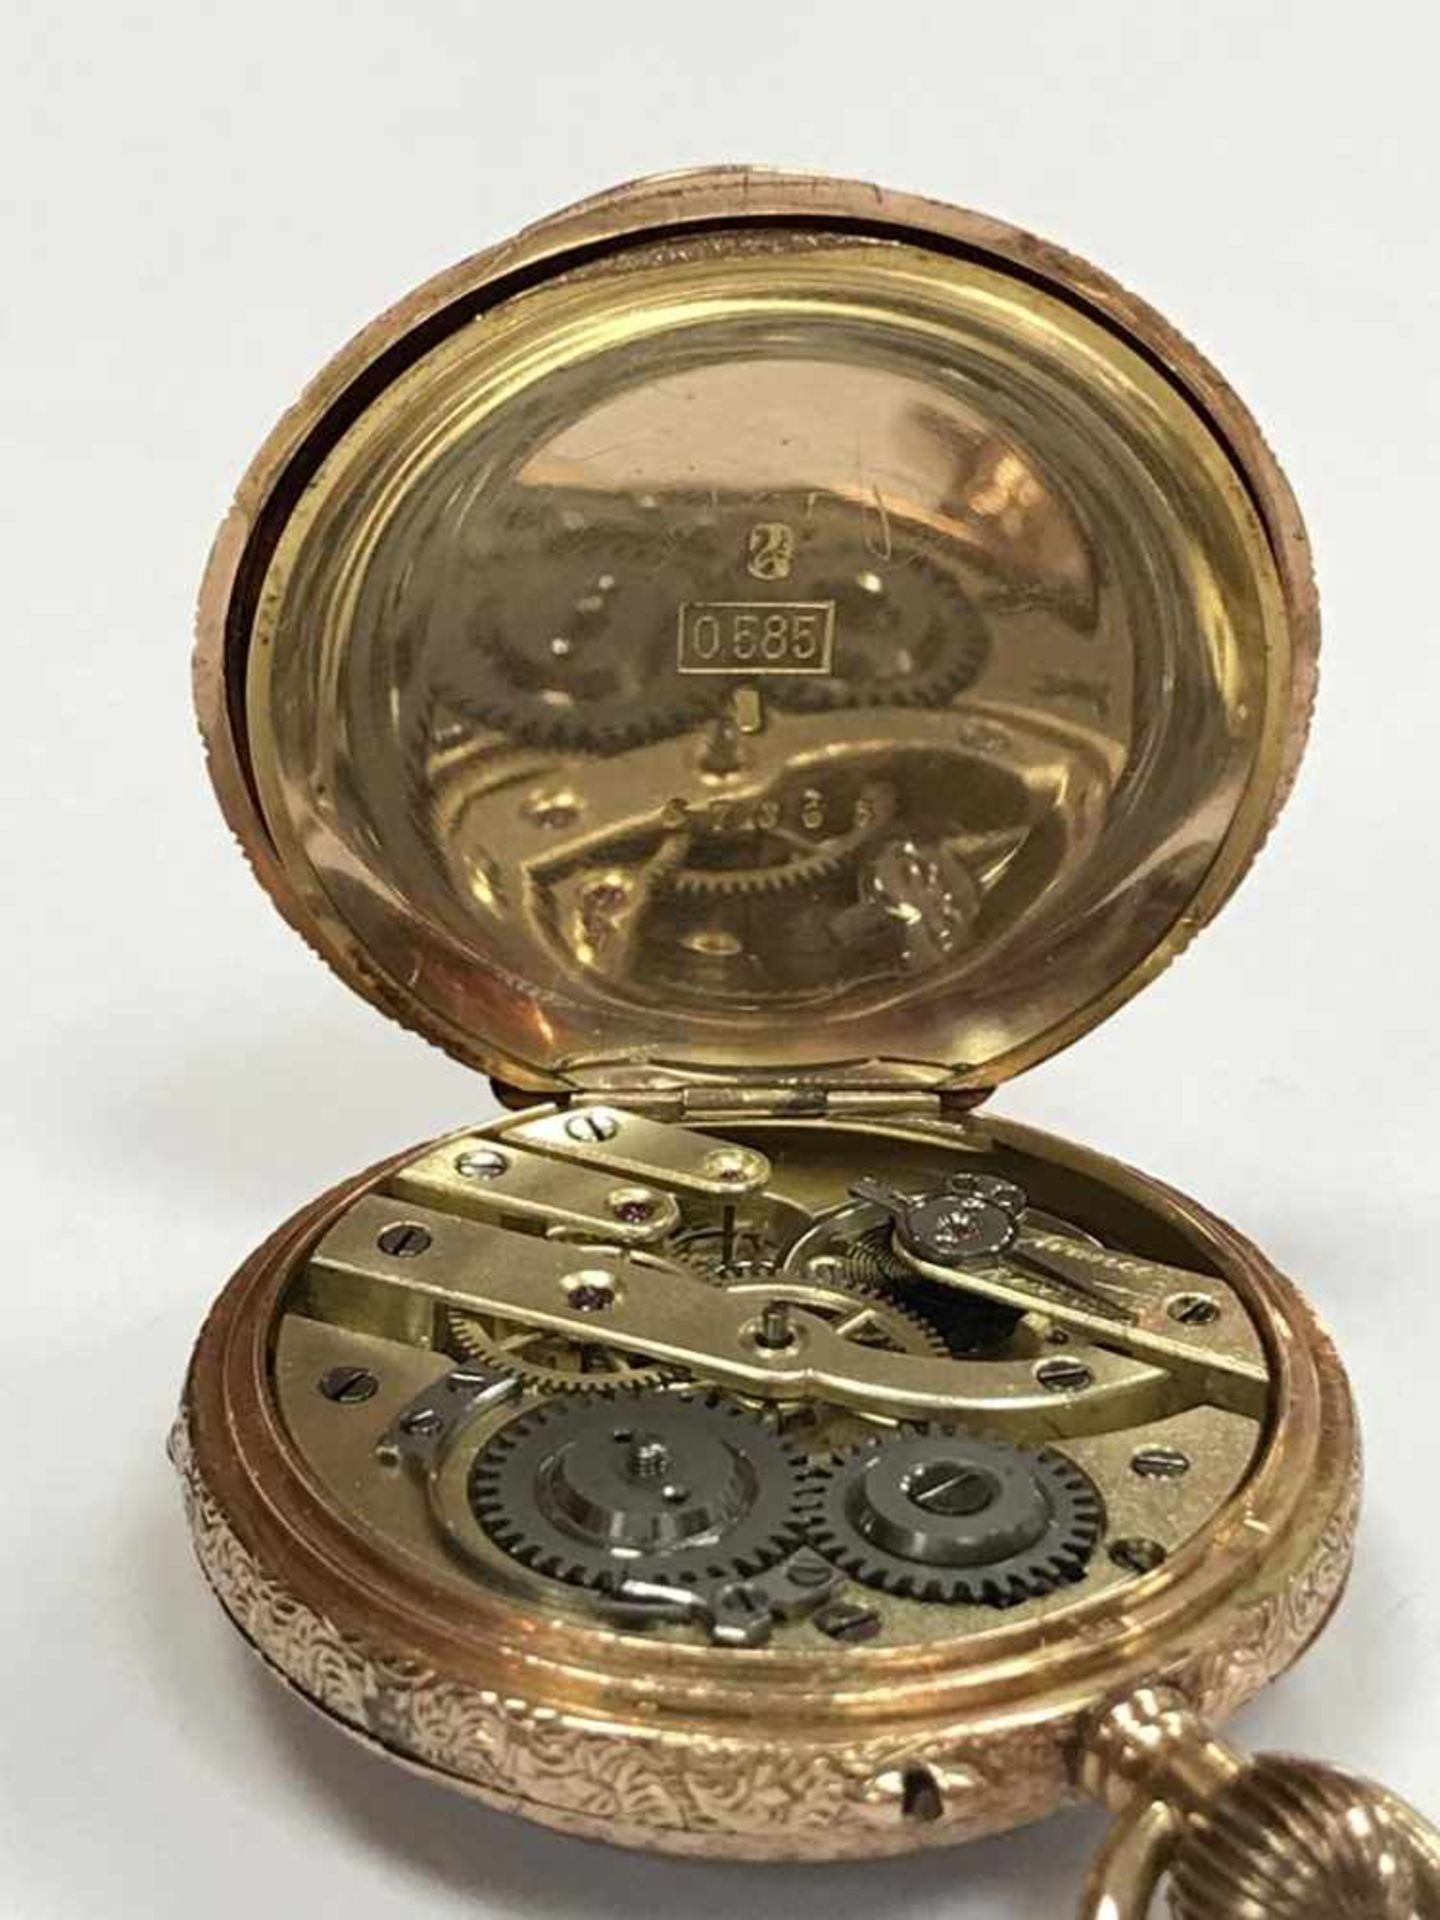 Gold Taschenuhr 585 "Bleienheuft Cöln a Rhein"Wohl Deutschland um 1880, Material: 585 Gold, Uhr - Image 6 of 6